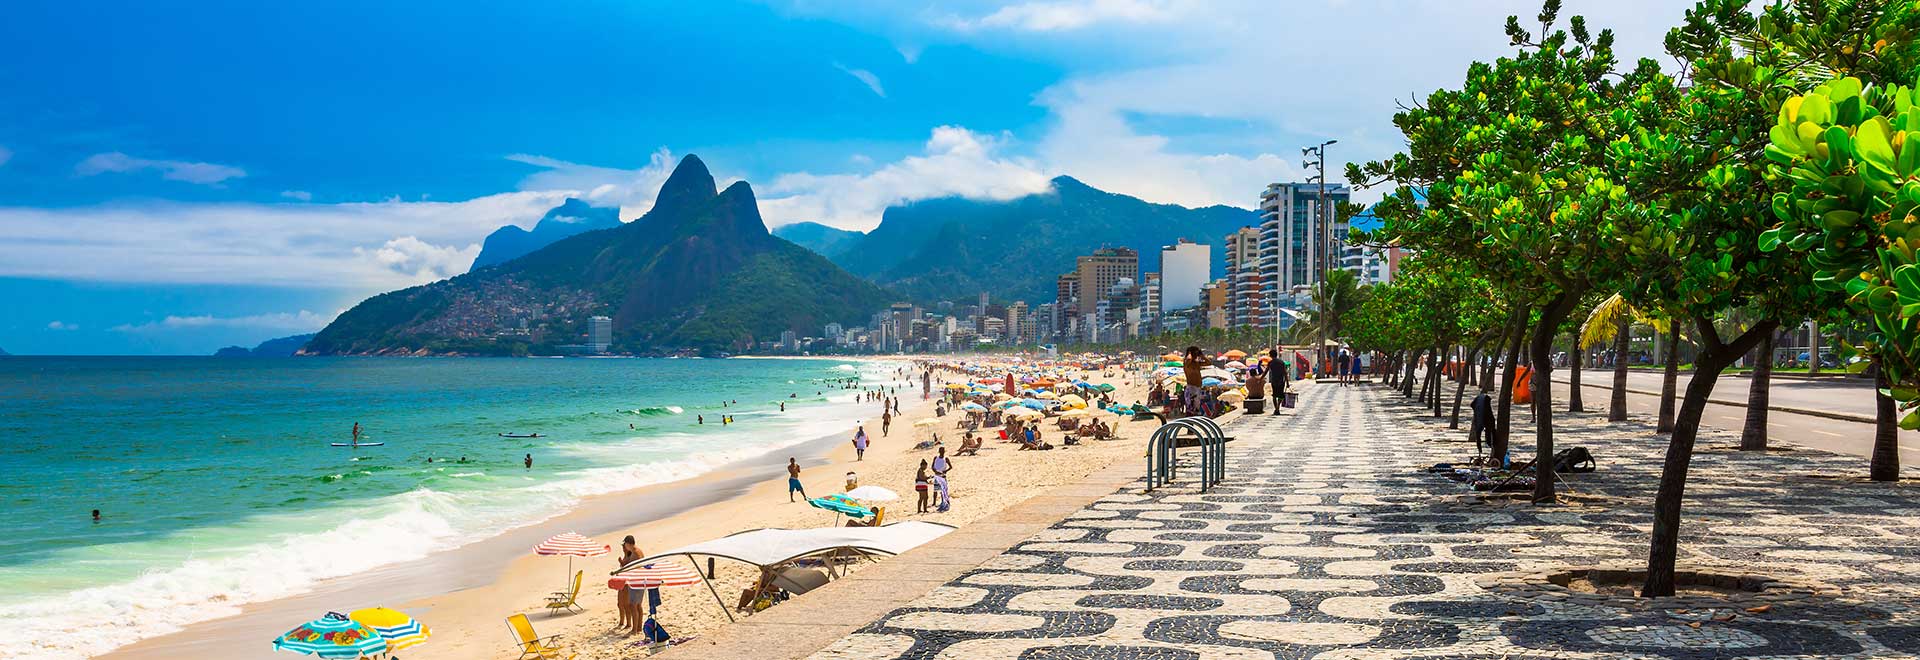 The Brazilian : Insider's Travel Guide